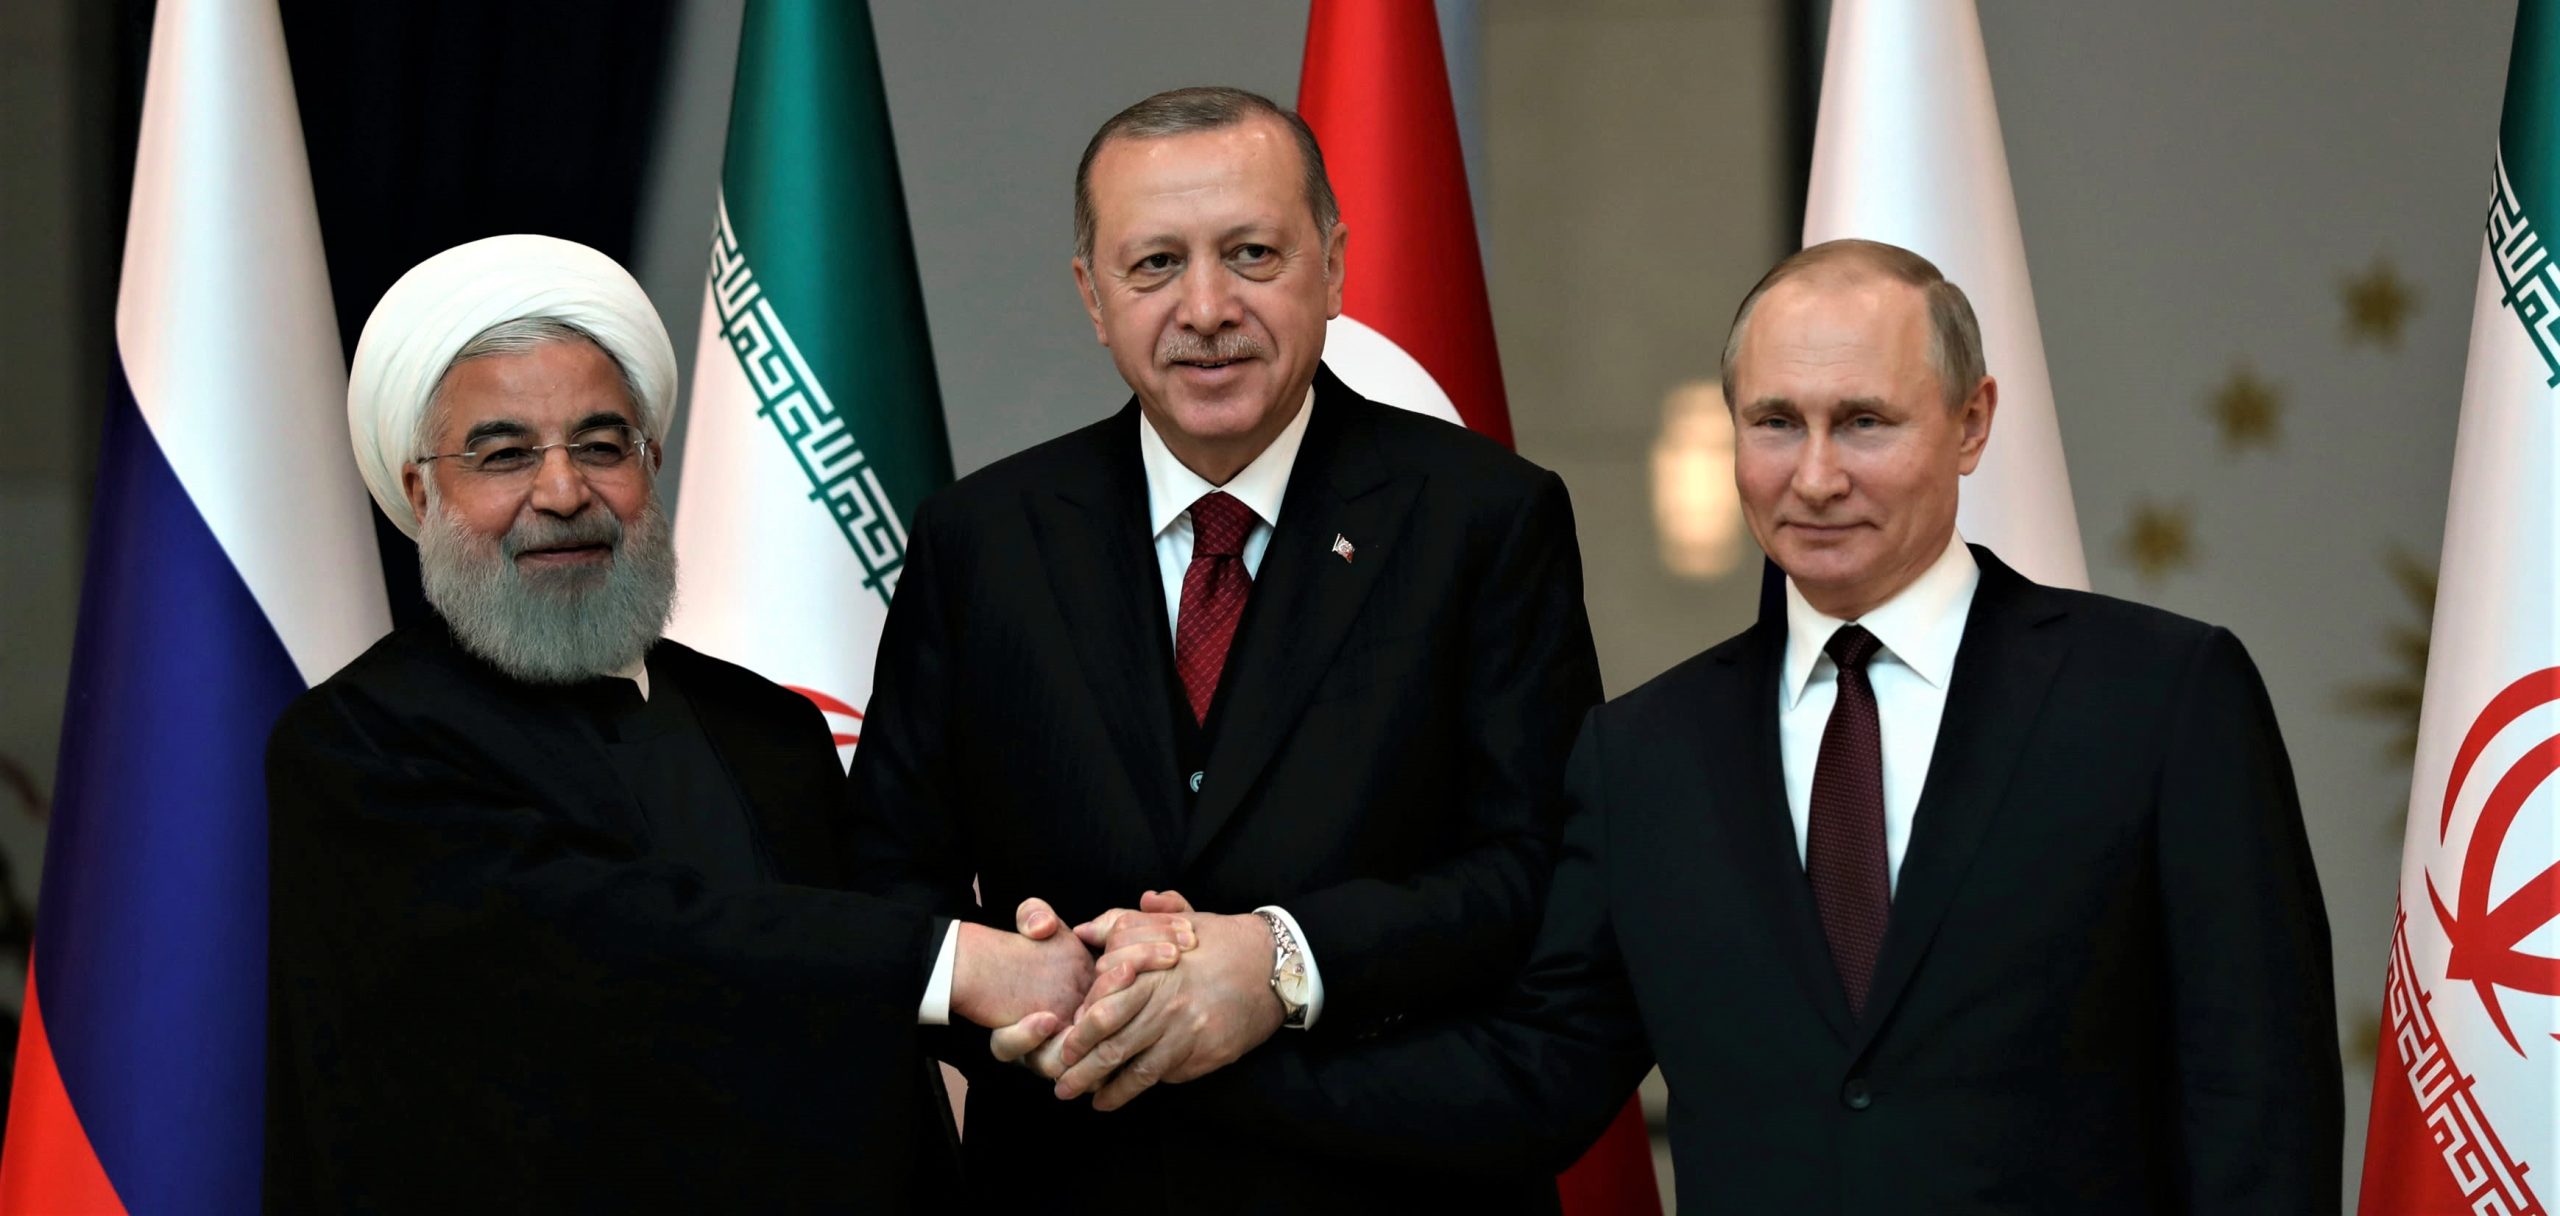 Αξονας Ρωσίας, Ιράν, Τουρκίας και Κίνας απέναντι σε ΗΠΑ και ΝΑΤΟ: Πώς απάντησαν στην έκτακτη σύνοδο